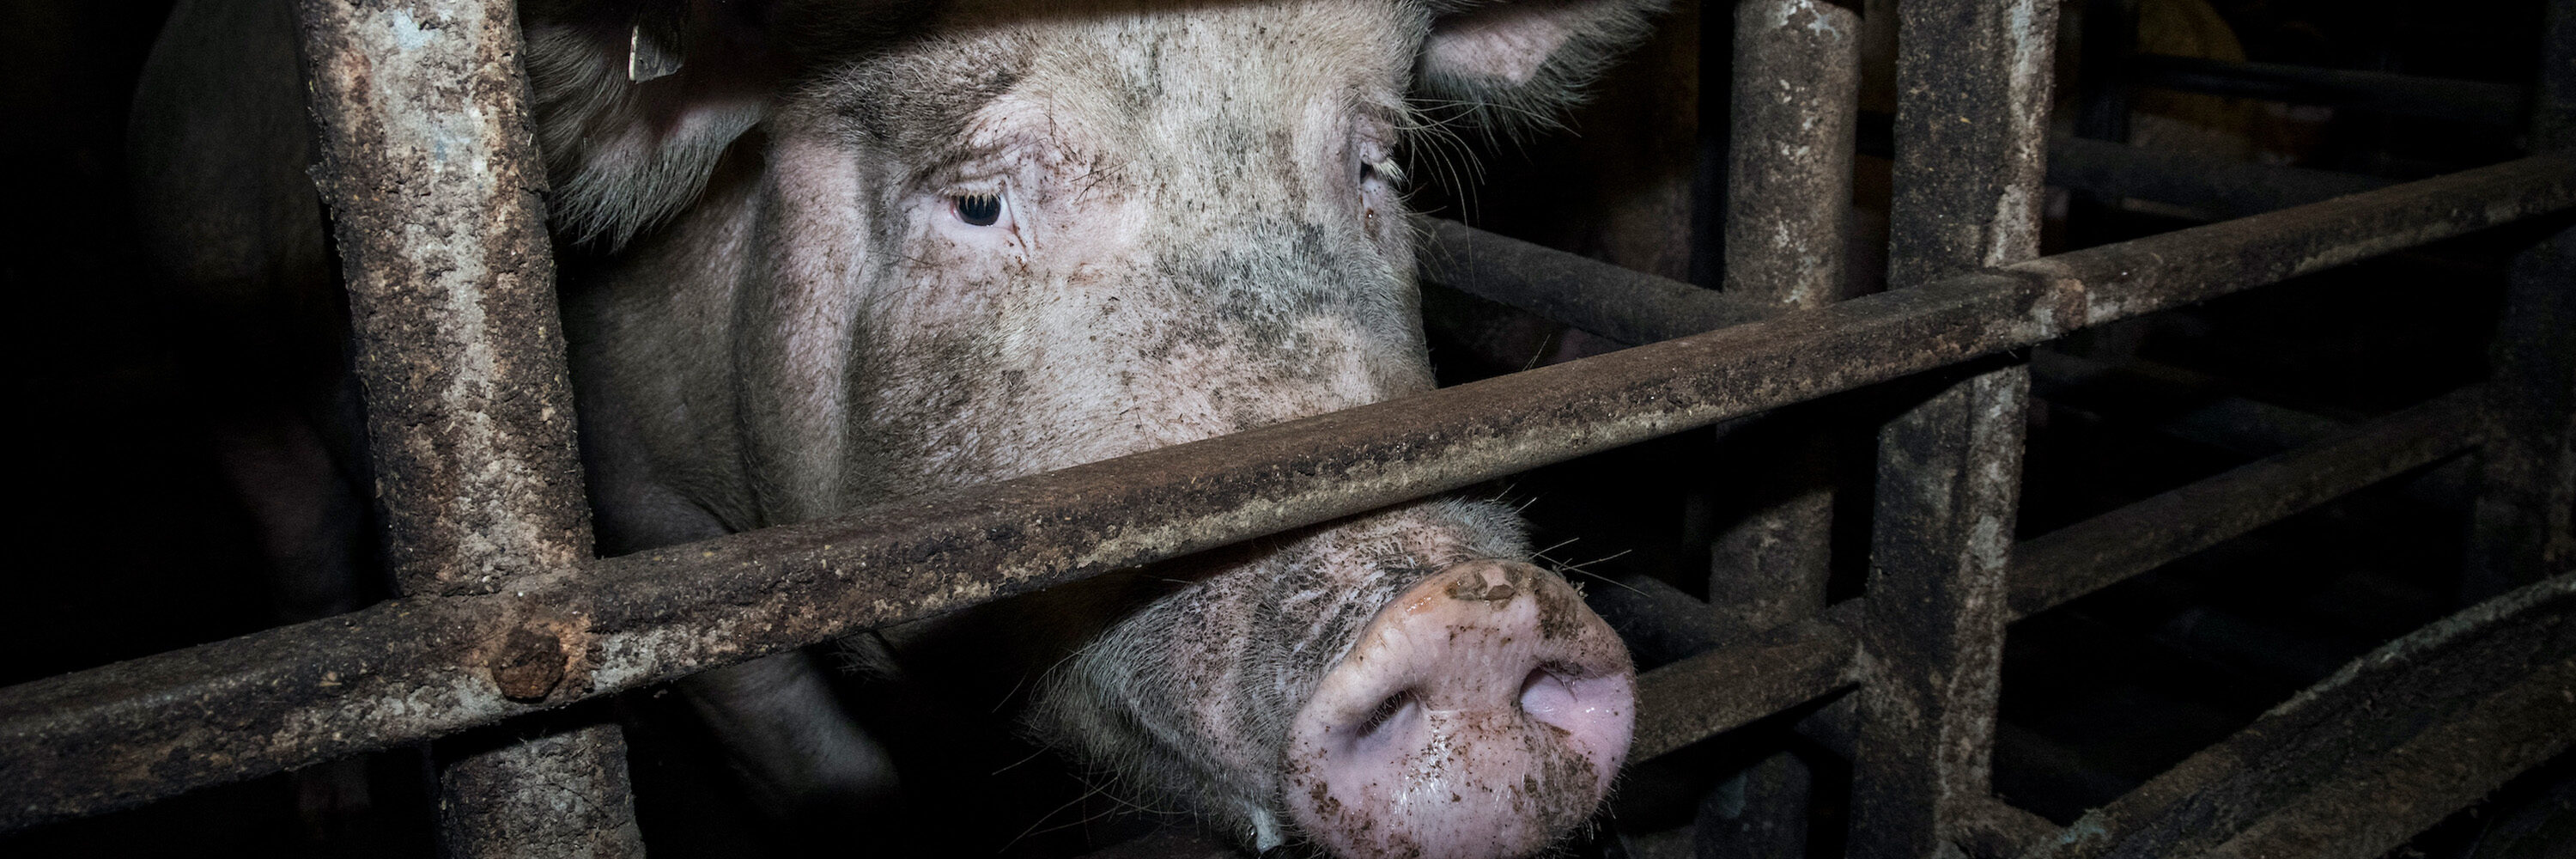 schwein in industrieller tierhaltung